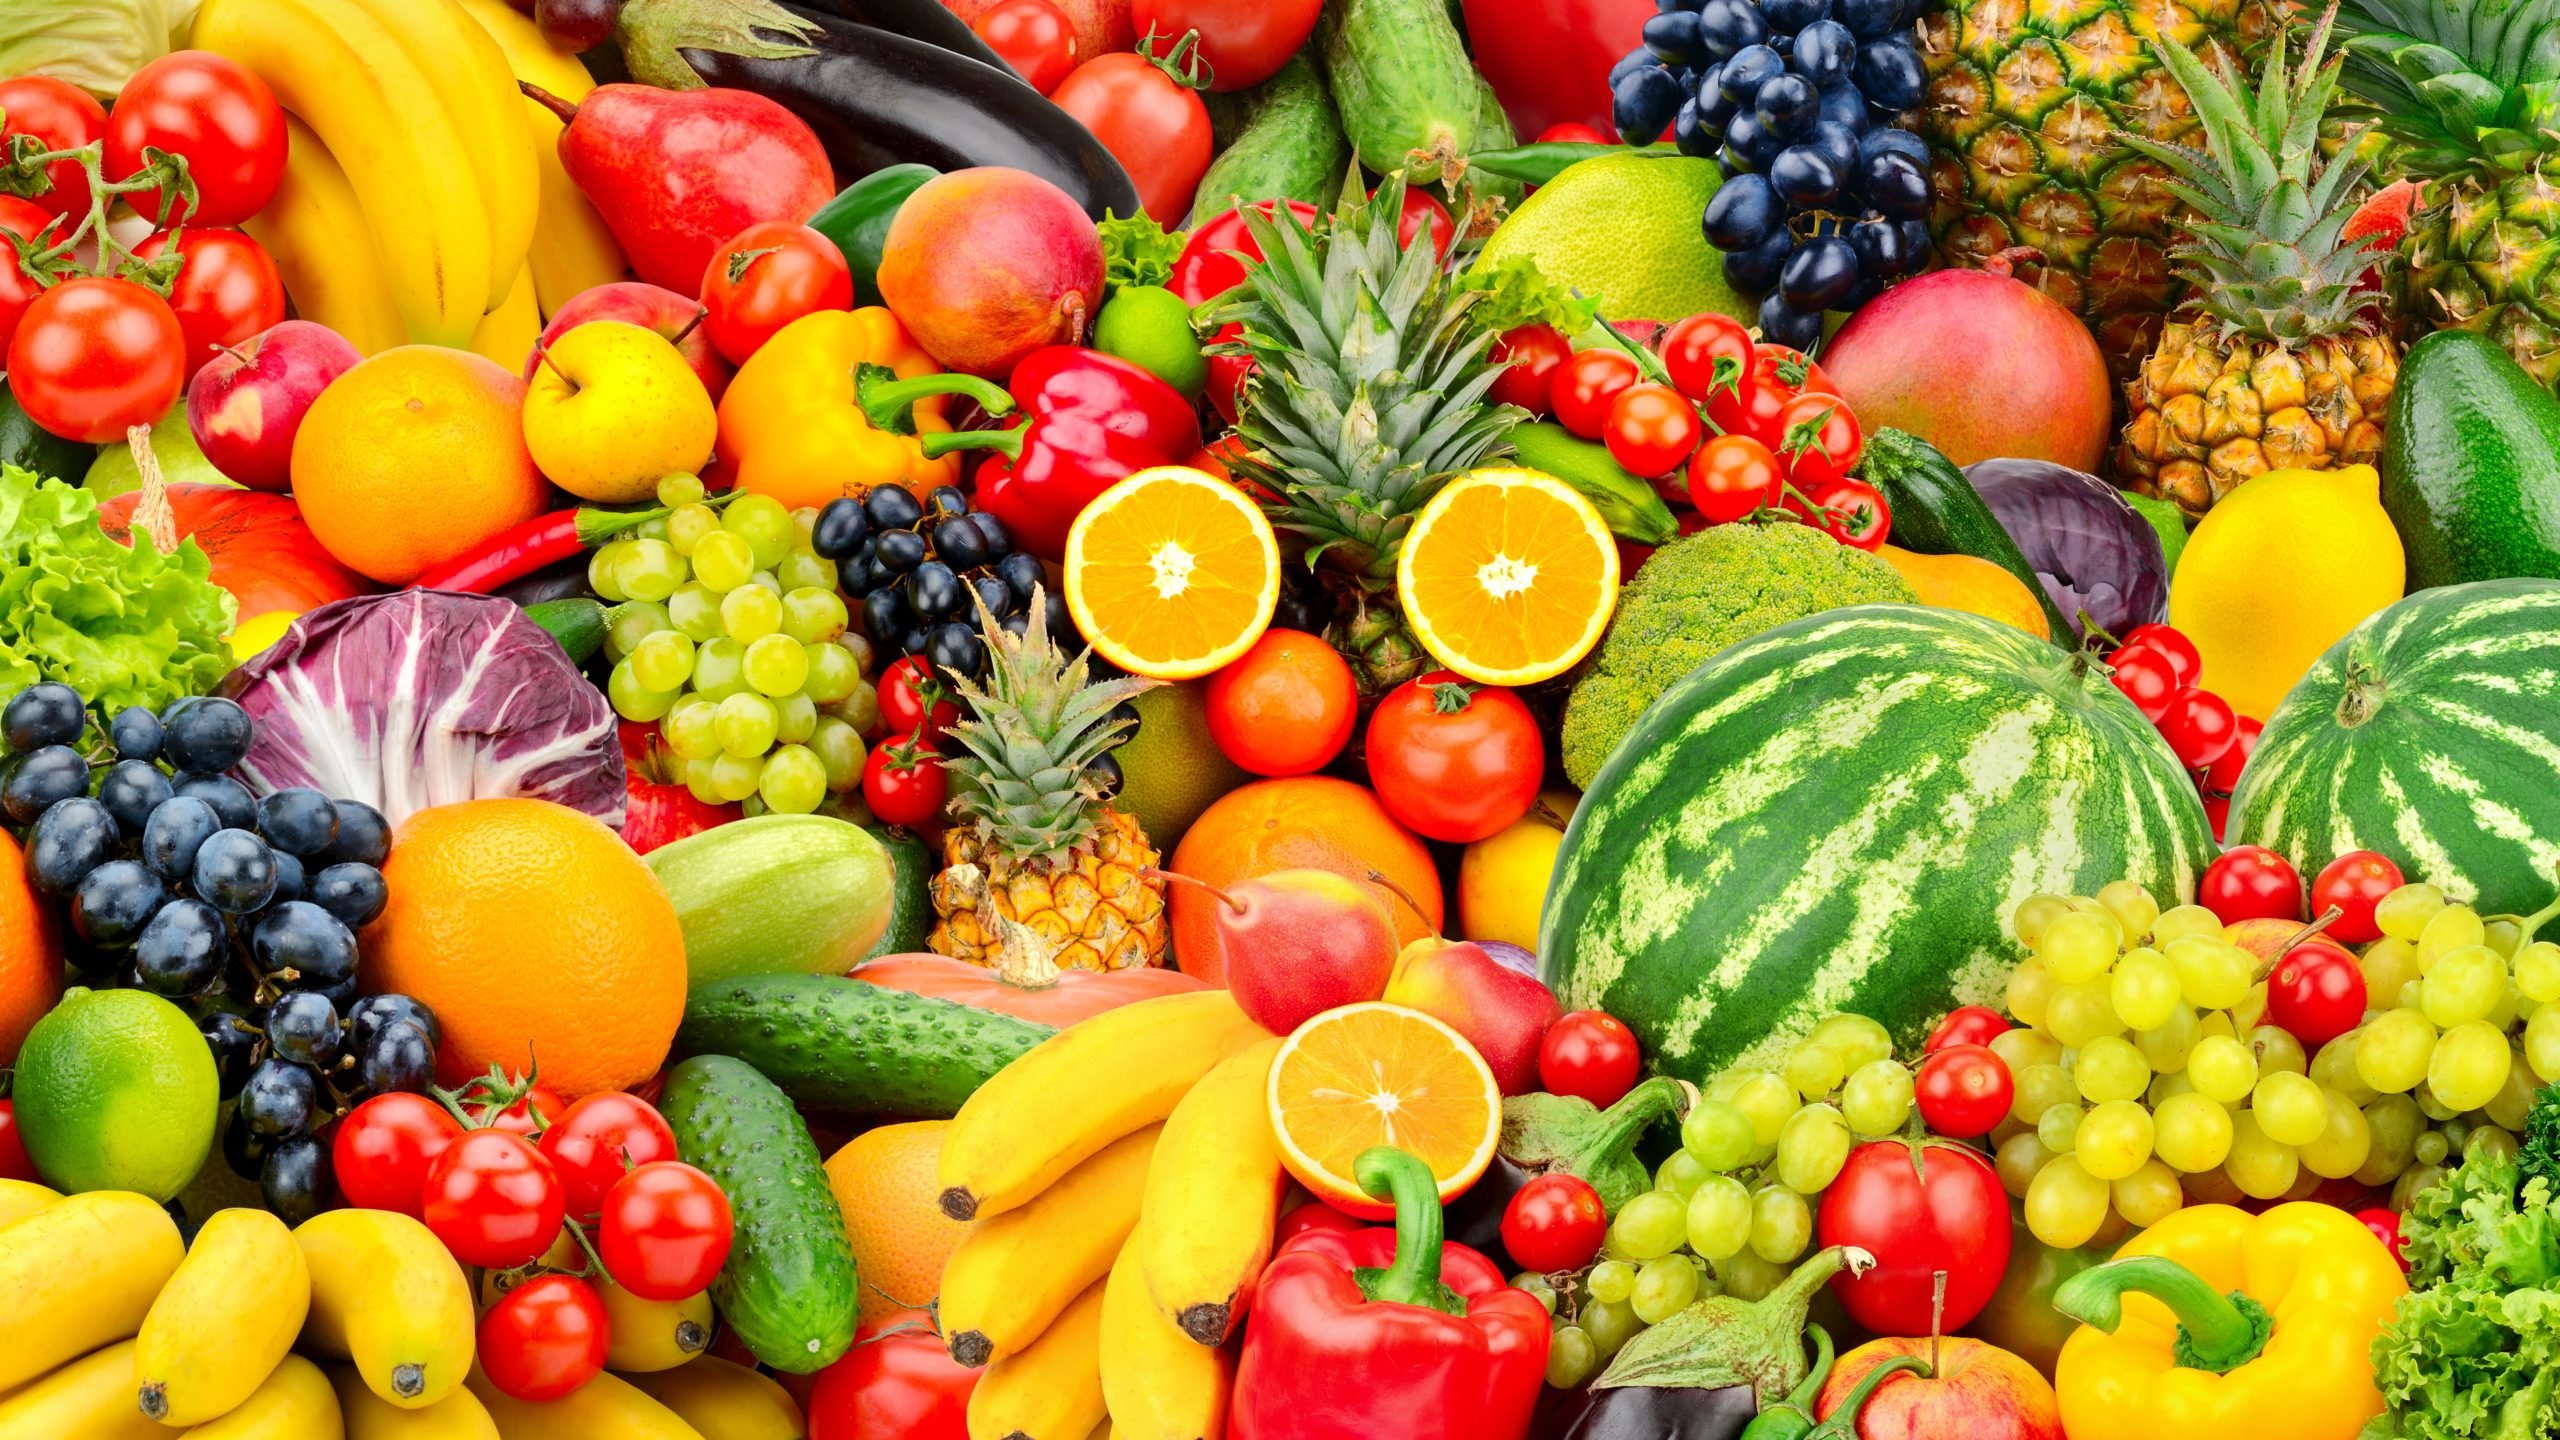 Food import. Цитрус мевалар. Овощи и фрукты. Фрукты овощи яркие. Красивые овощи и фрукты.